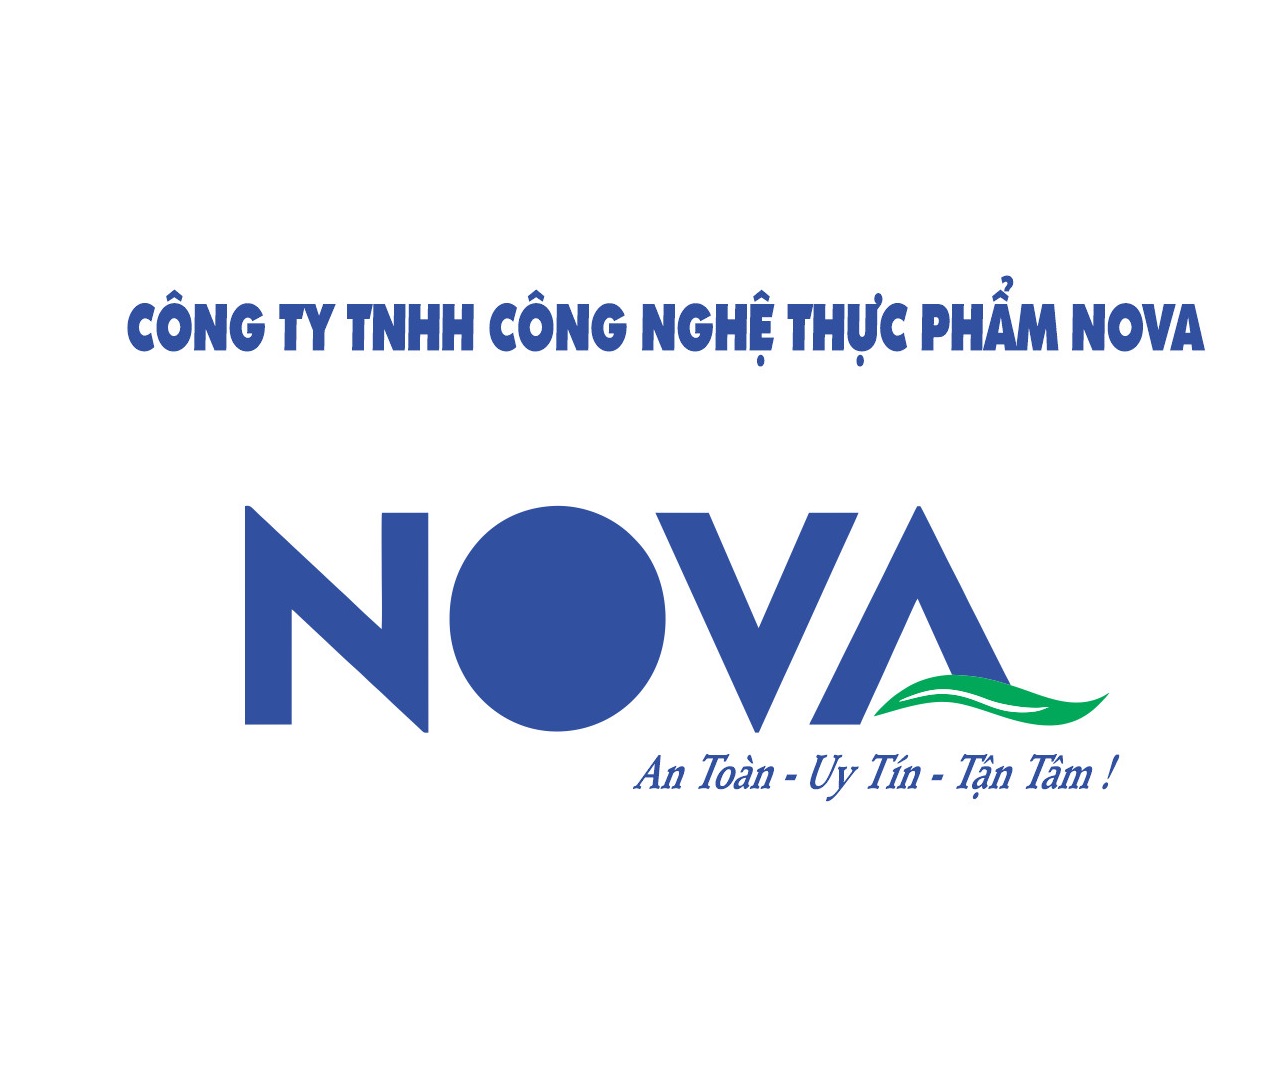 Công ty TNHH Công nghệ thực phẩm NOVA